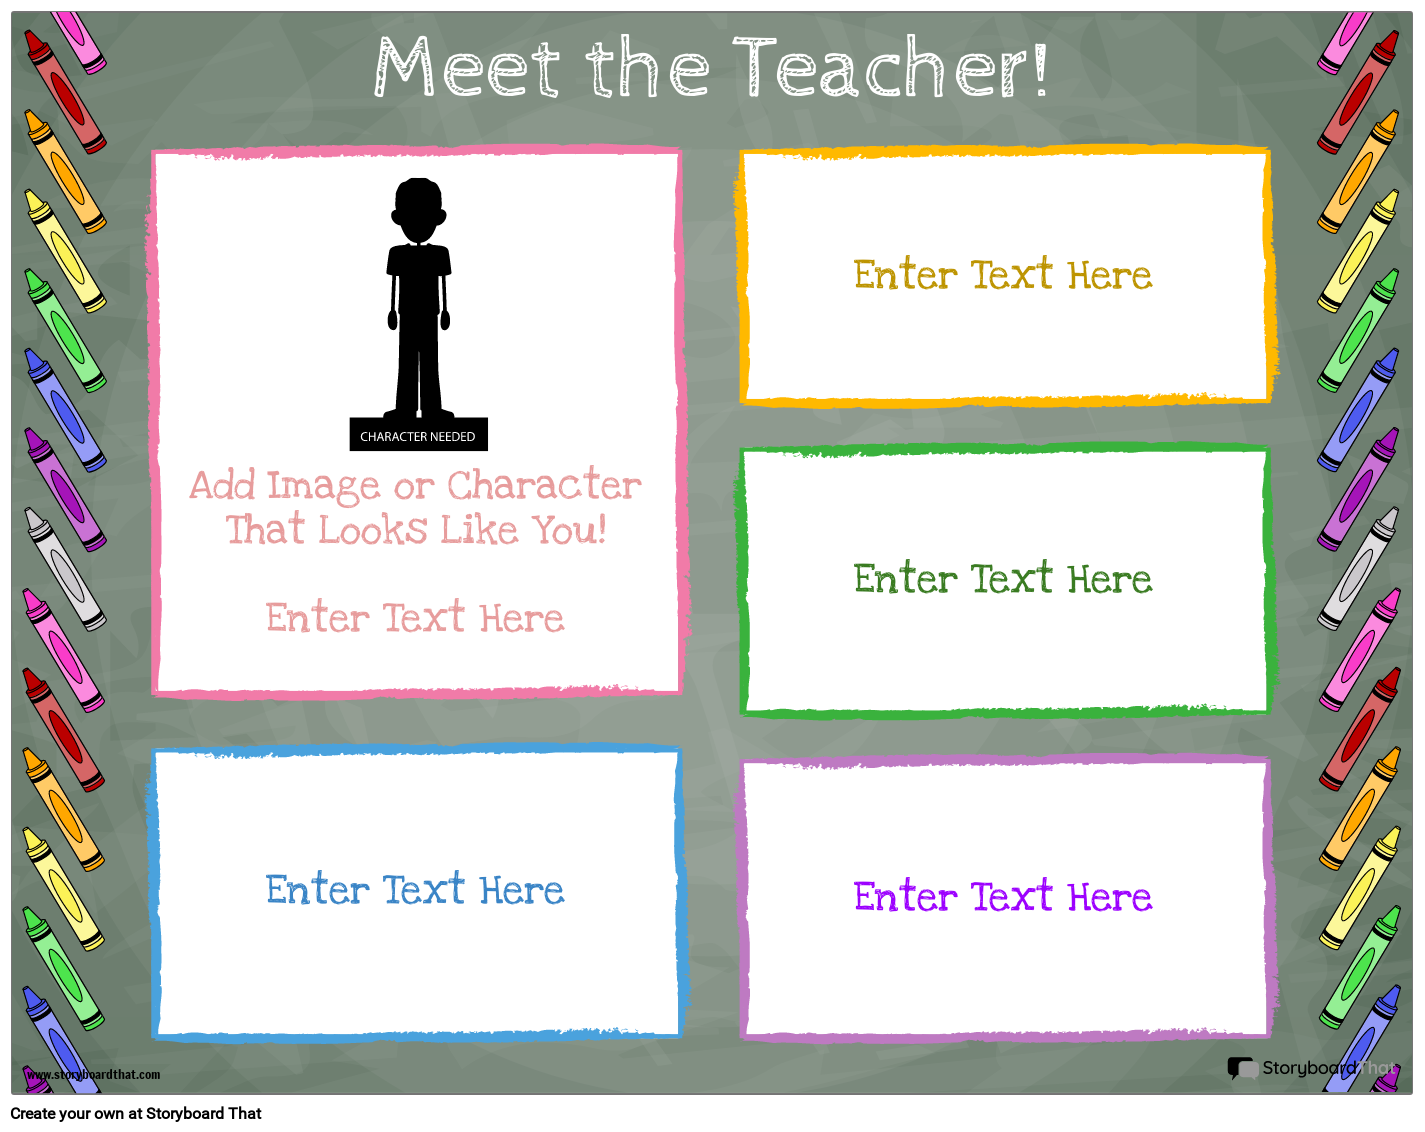 meet-the-teacher-template-landscape-color-2